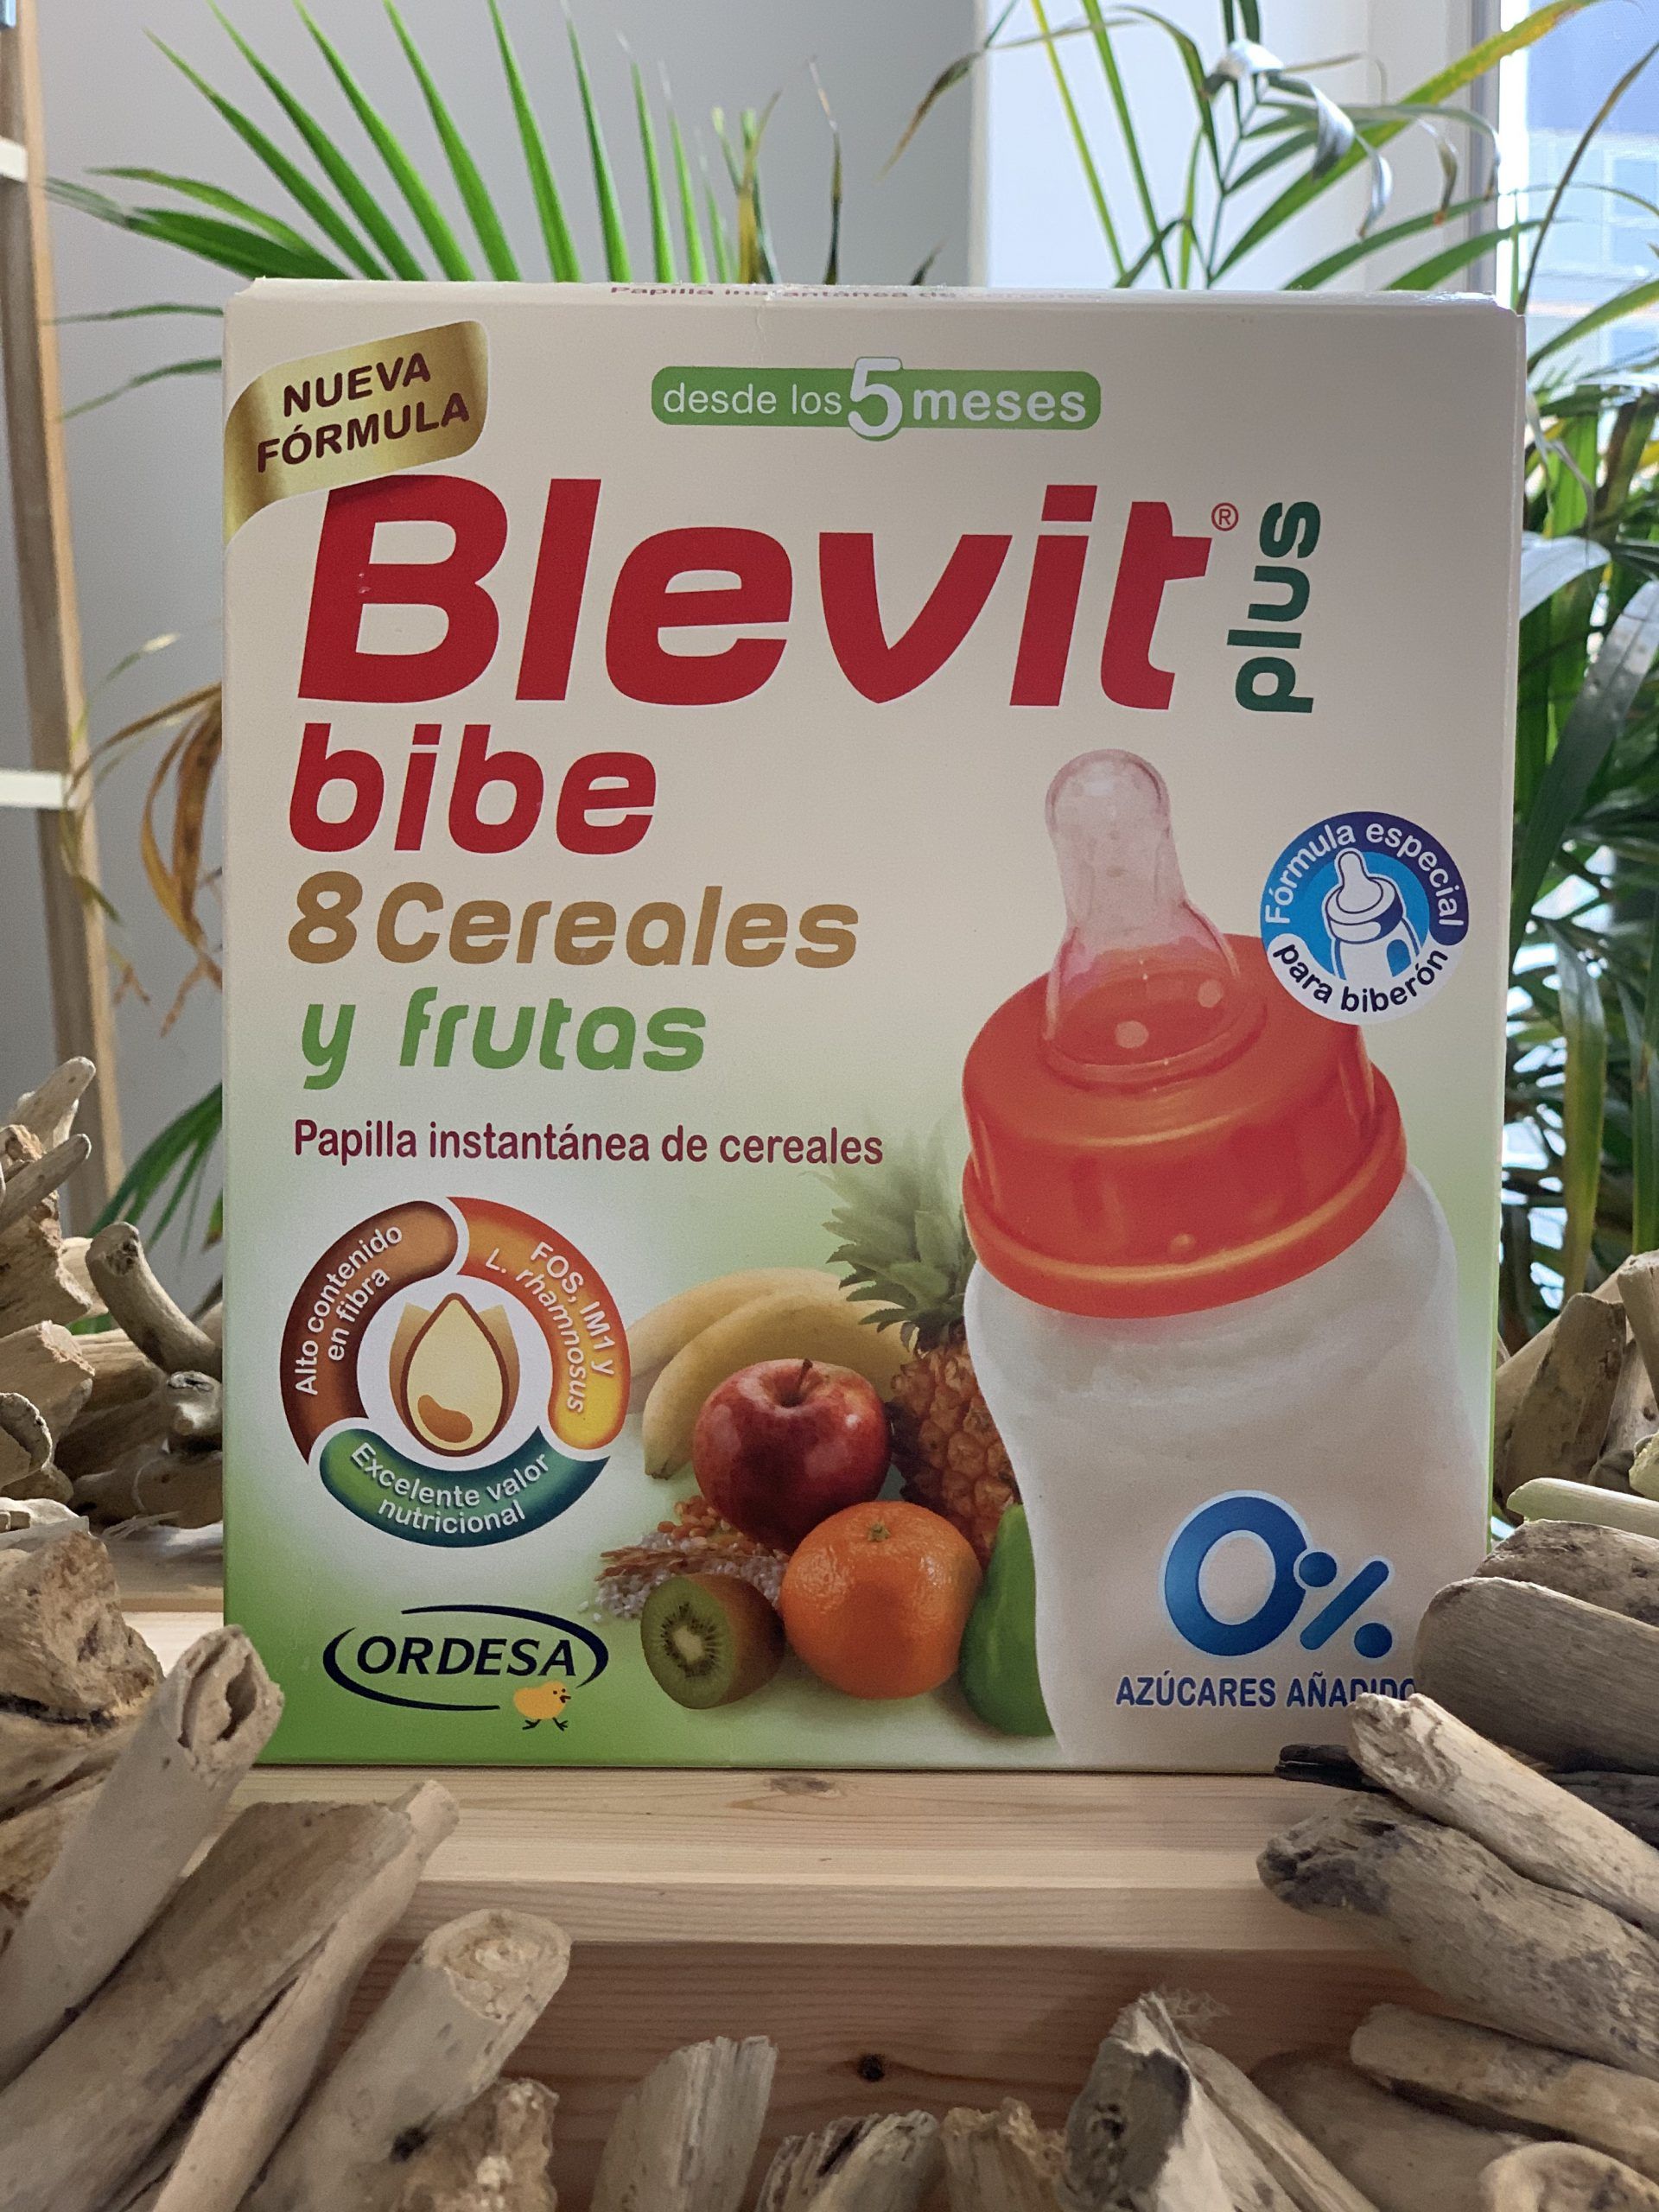 Blevit Bibe 8cereales y fruta: Servicios de Farmacia Casariego